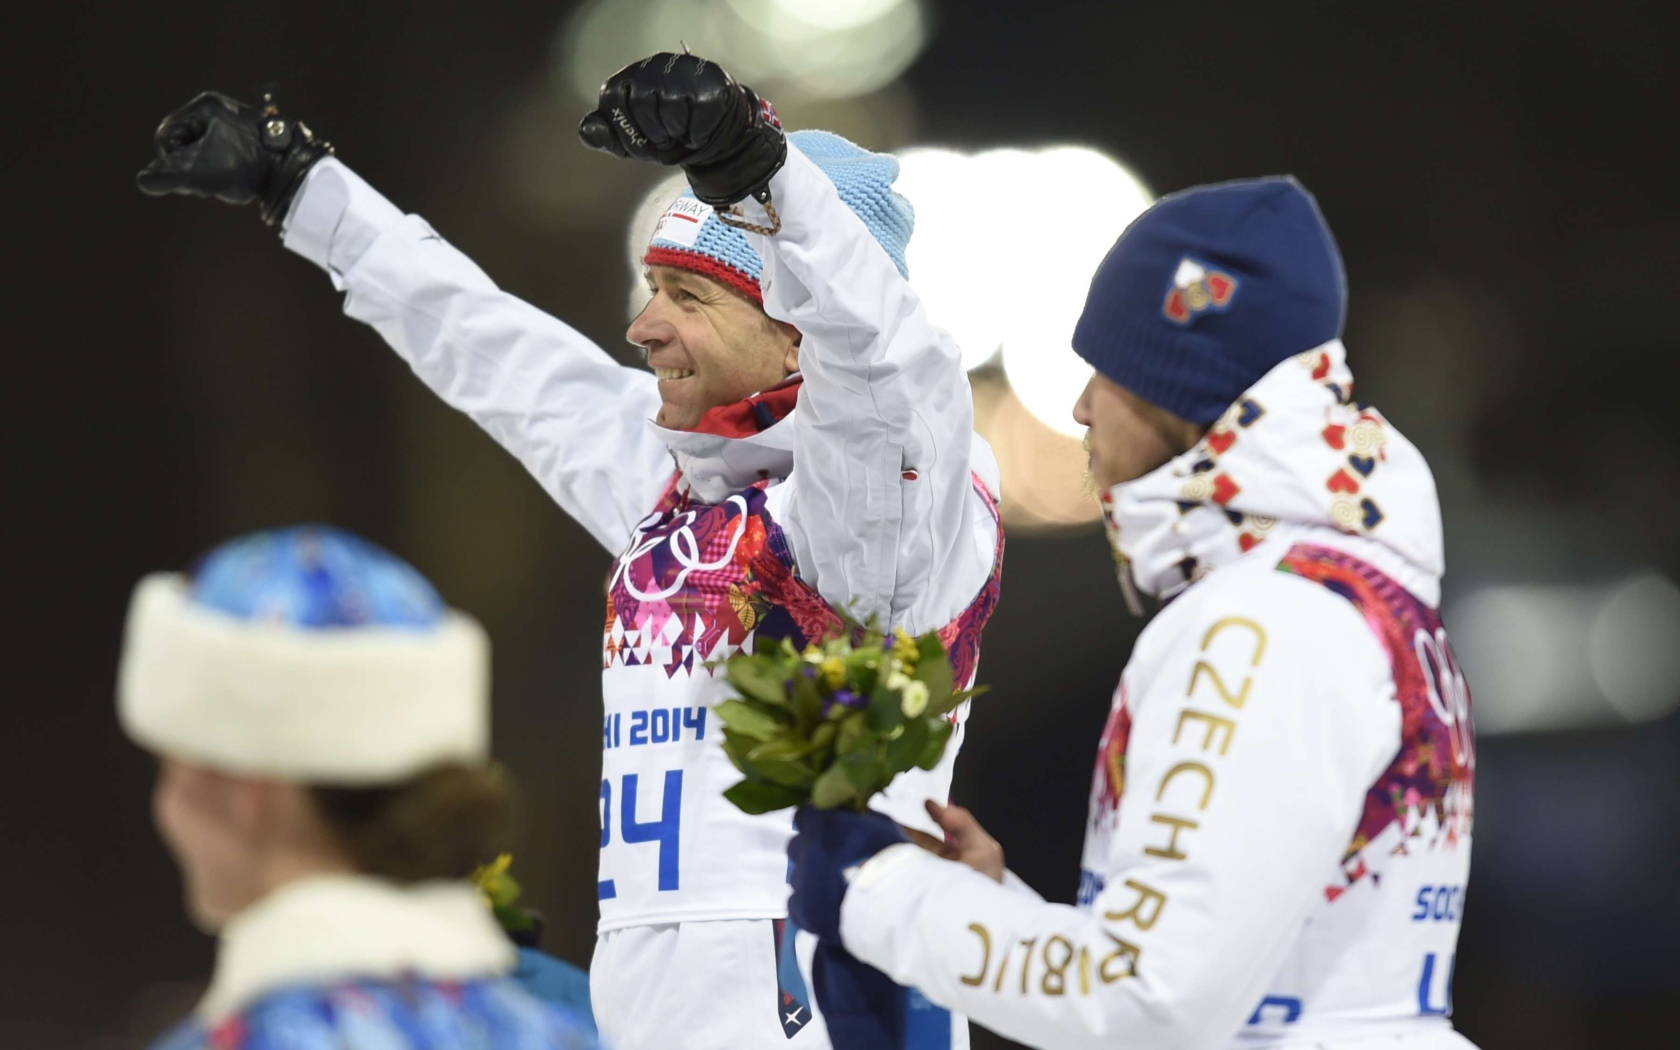 Уле Эйнар Бьорндален Норвегия биатлон золотой медалист Олимпиады в Сочи